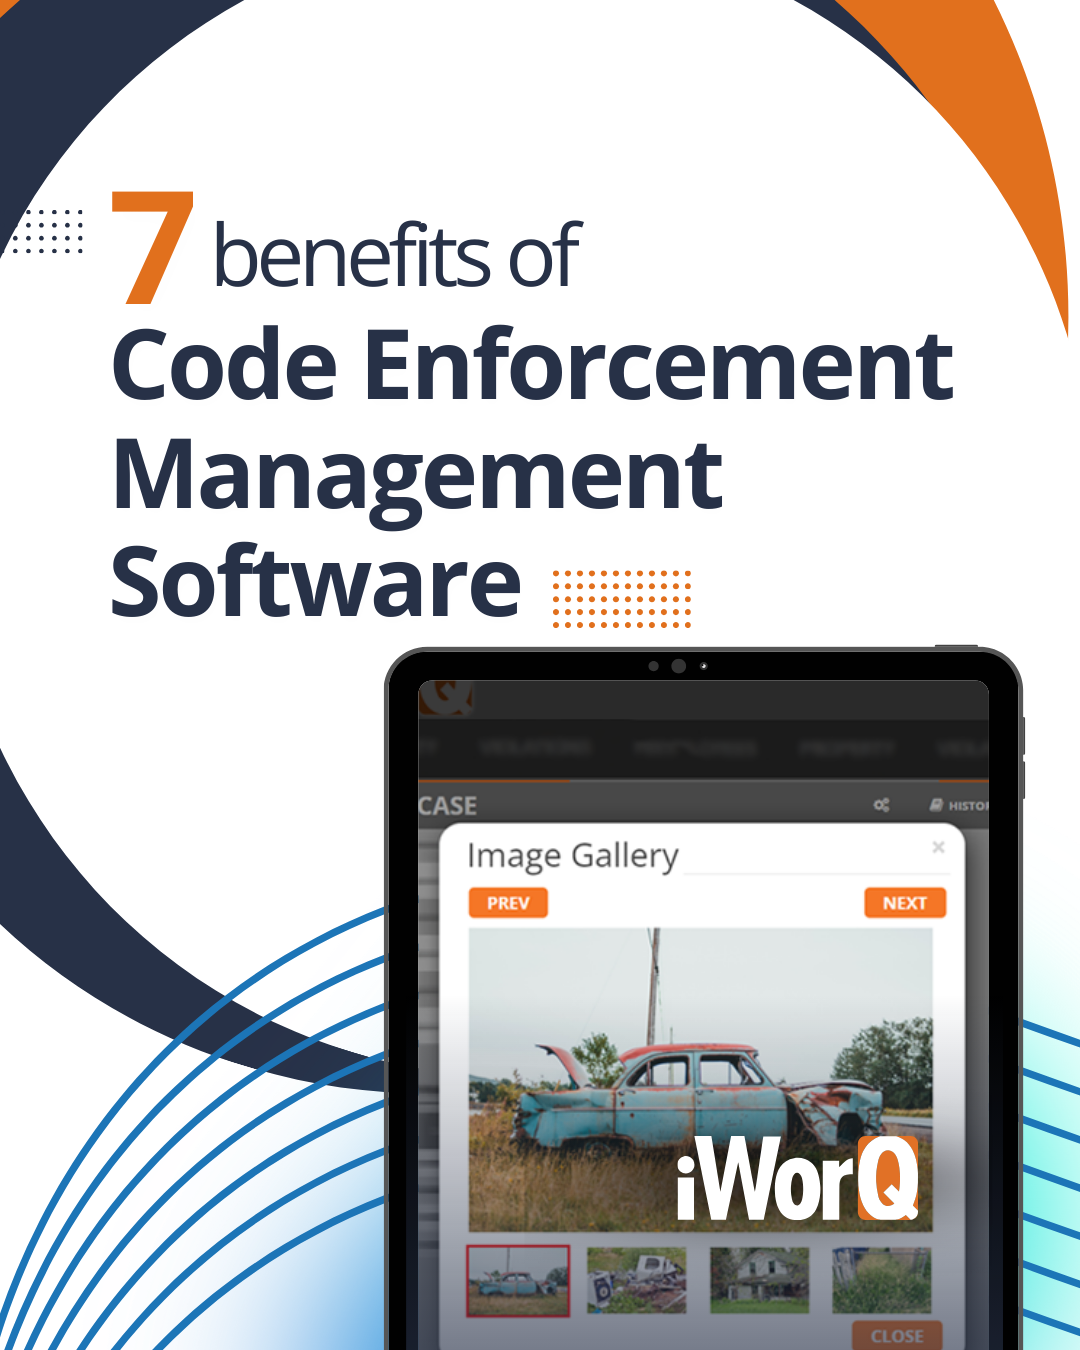 code enforcement management blog post header image